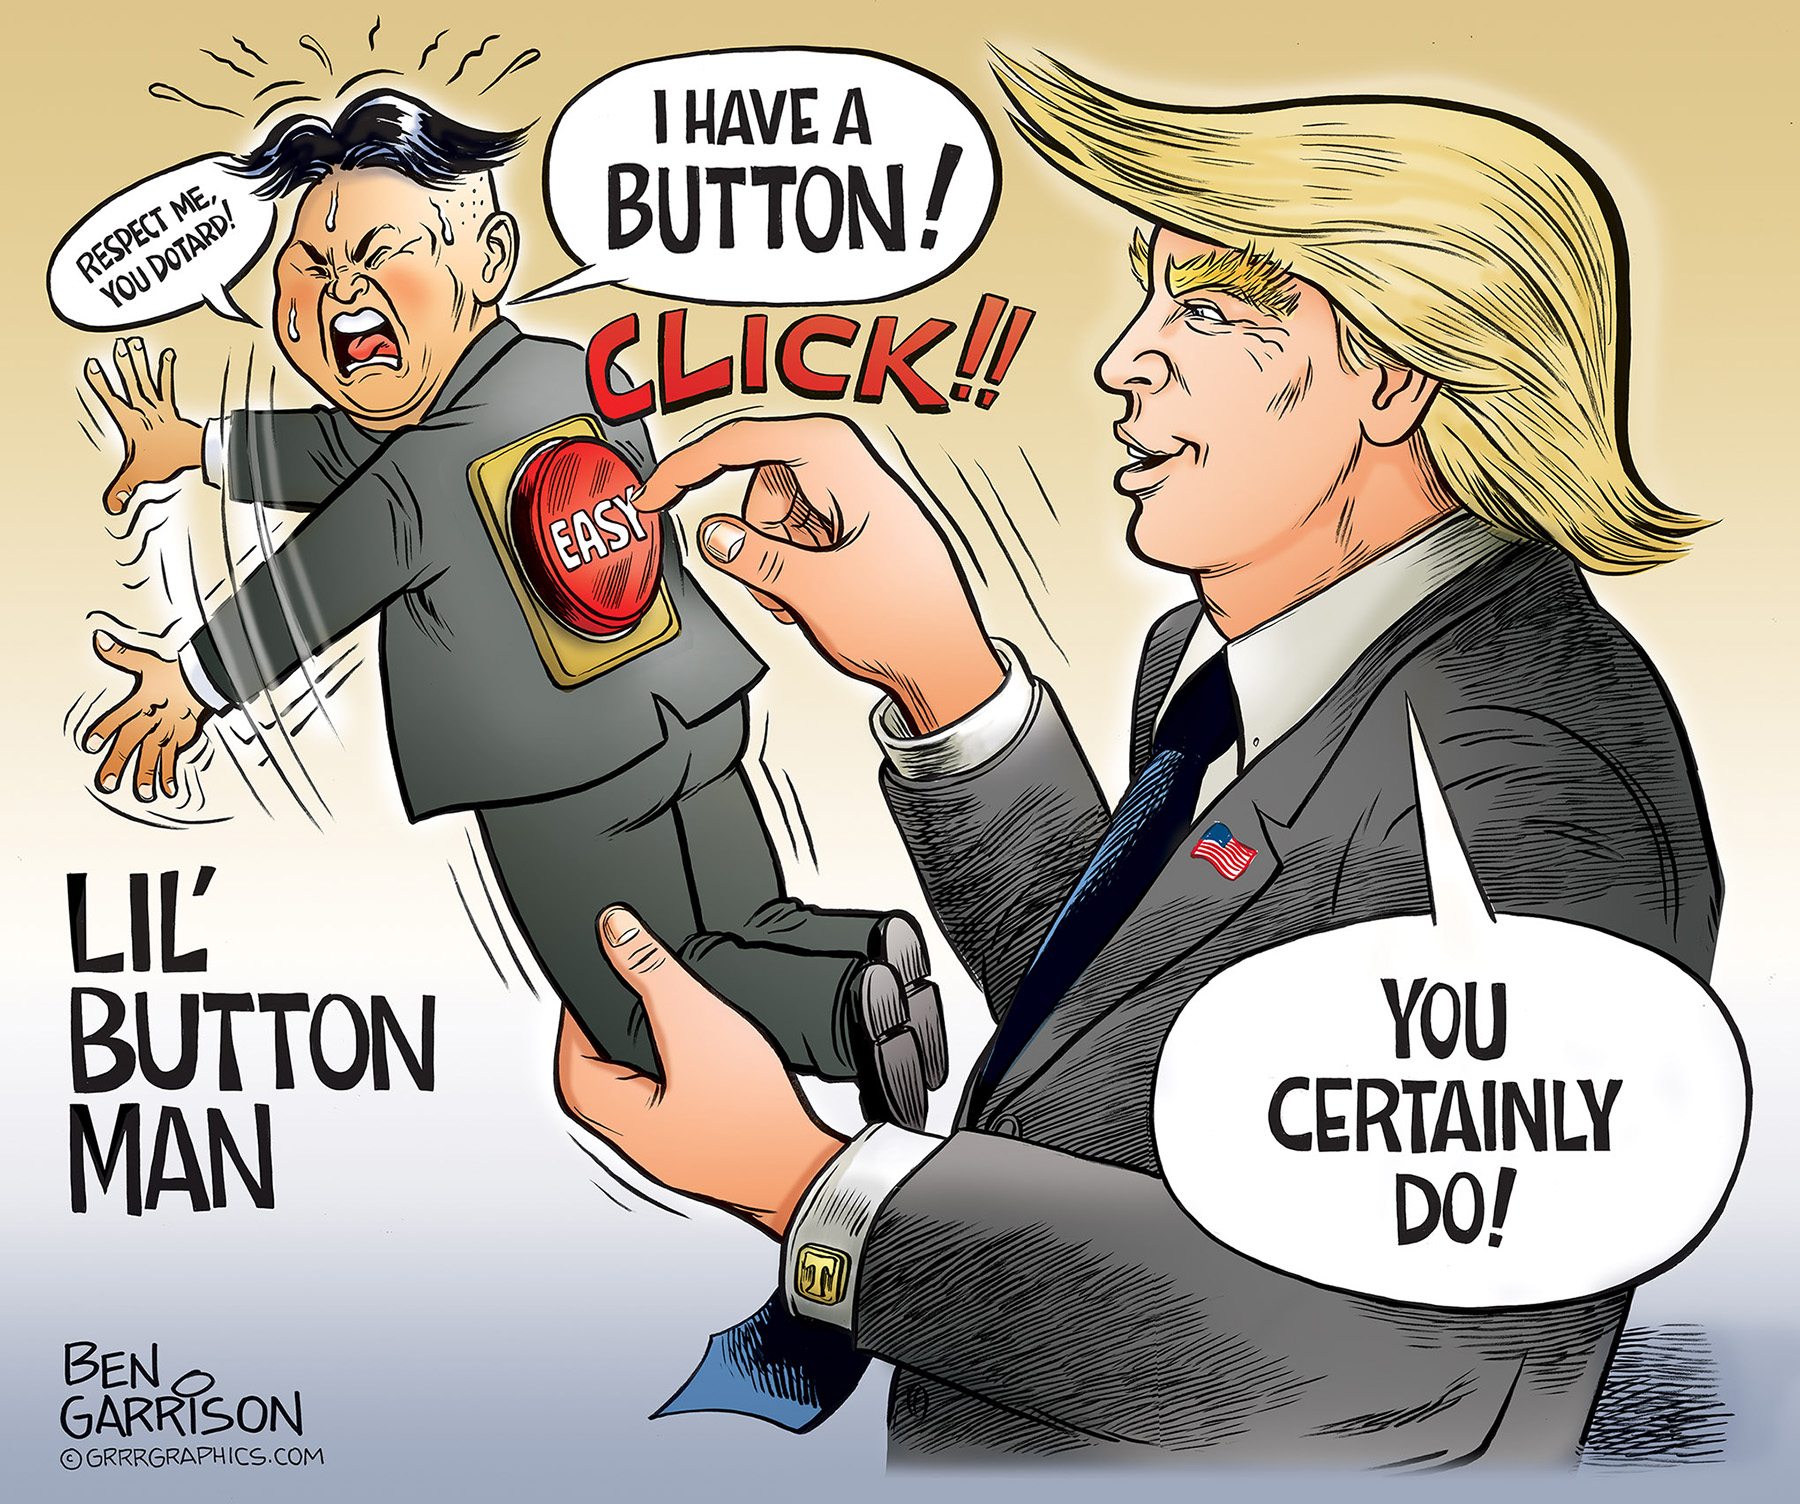  Kim  Jong  Un  button pushed by Trump cartoon  Grrr Graphics